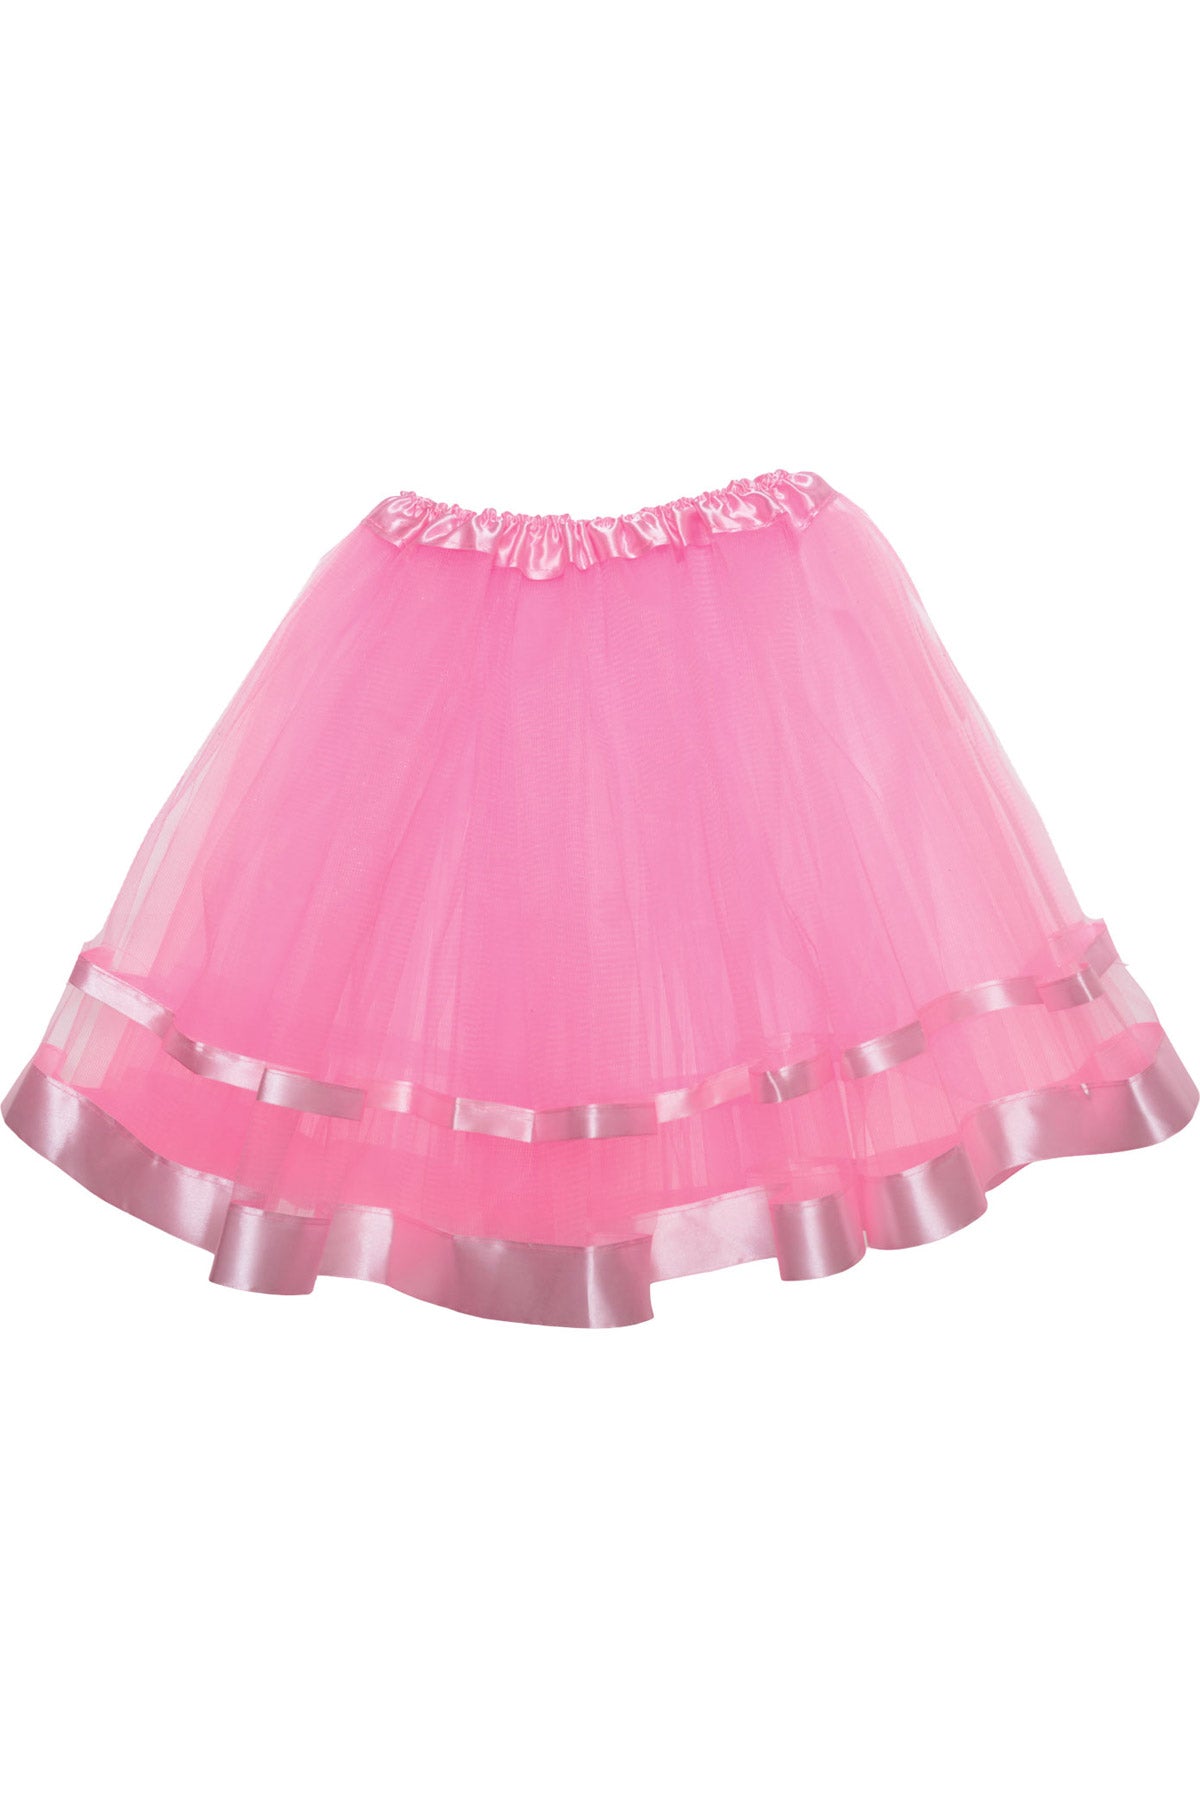 Promo Tutu - Pink with Pink Ribbon Underwraps  29890